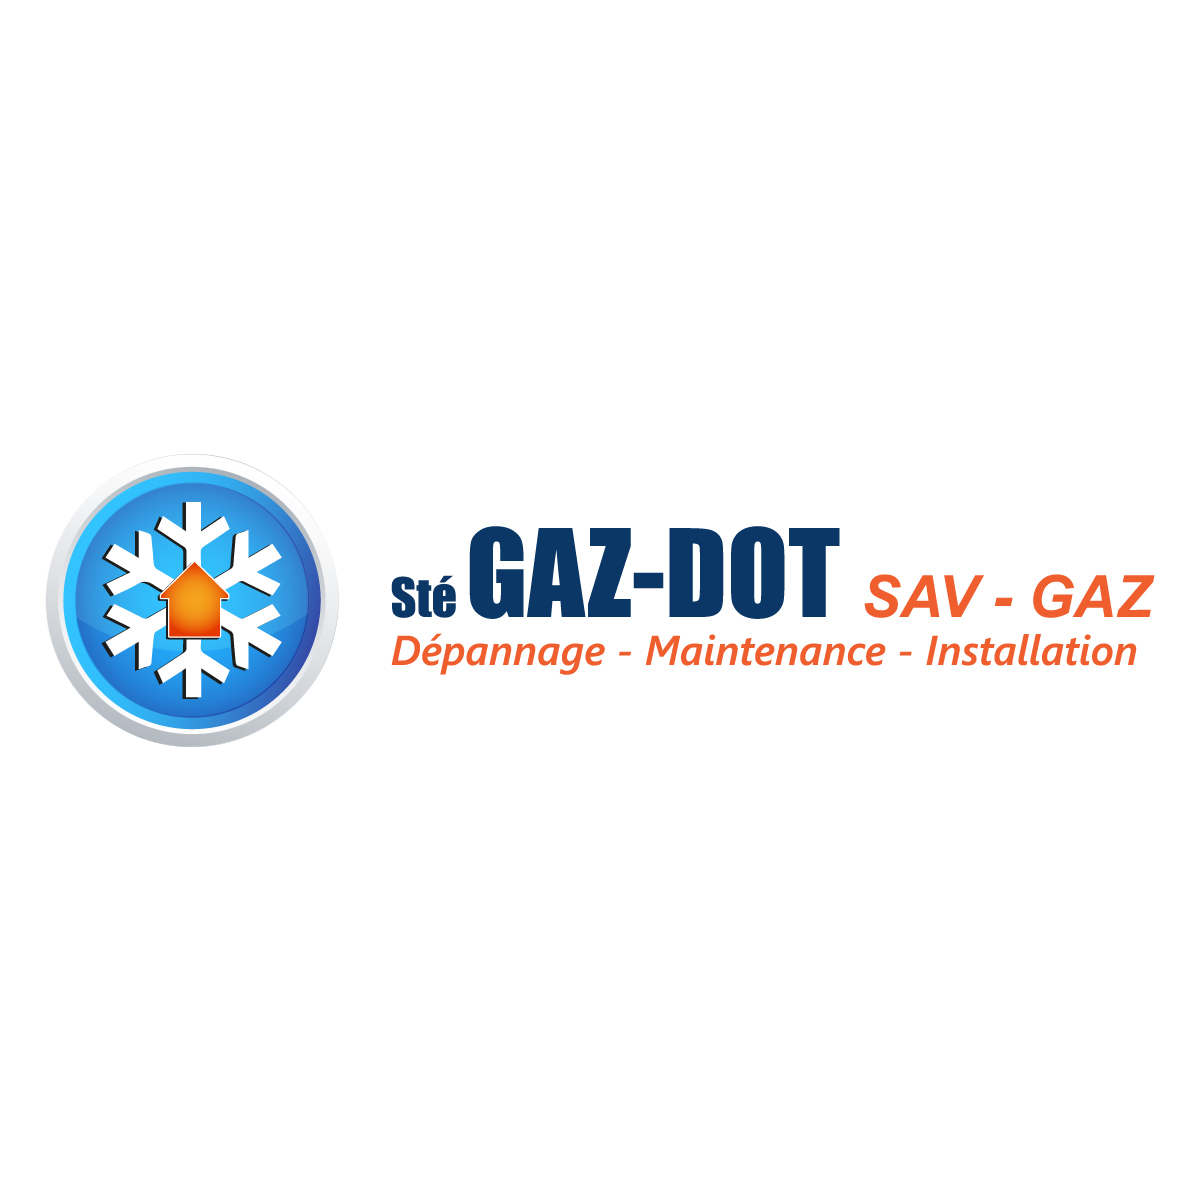 (c) Gaz-dot.com